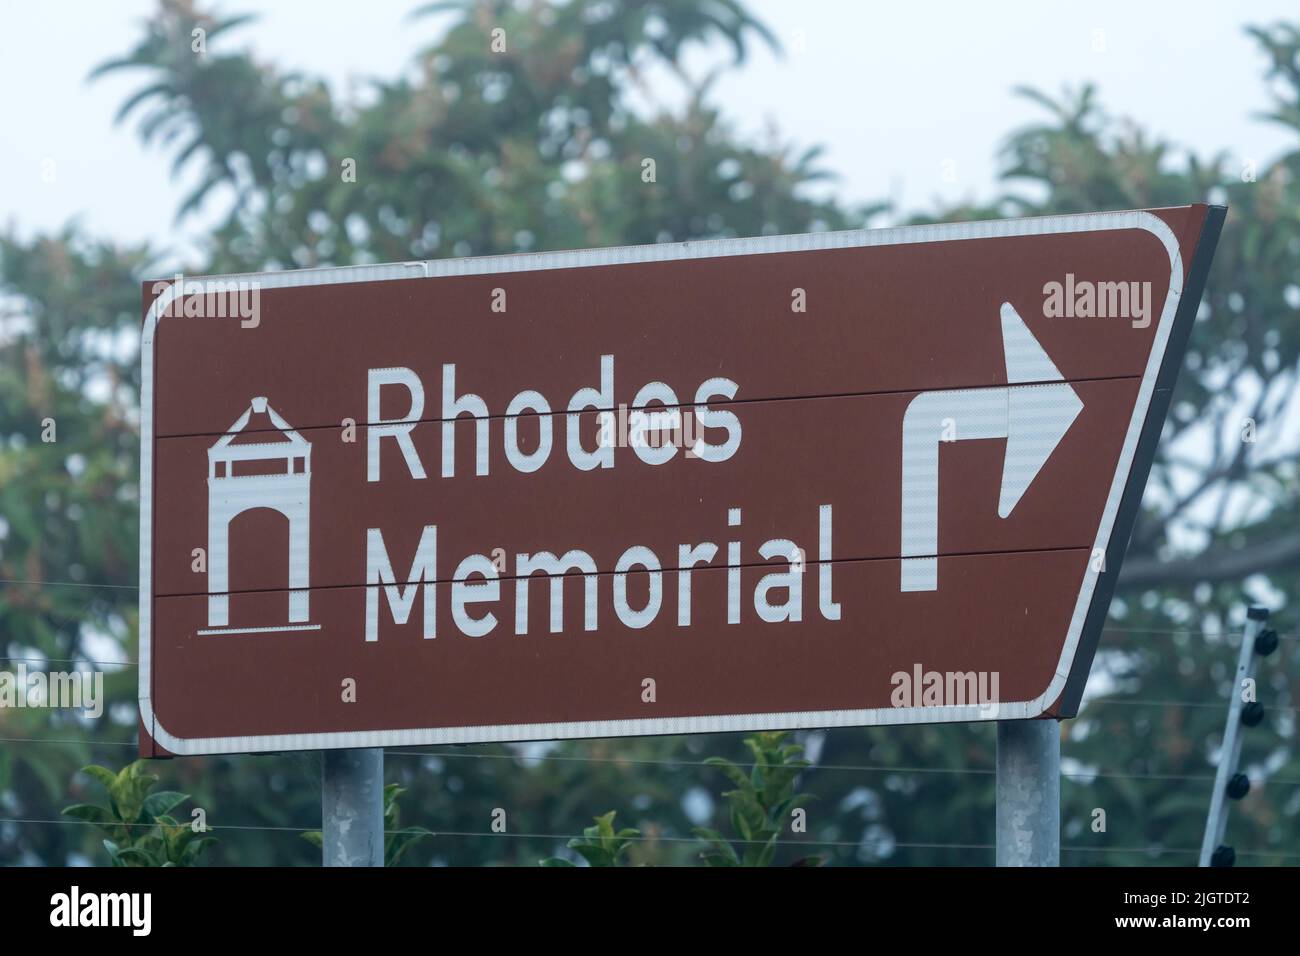 Señal de carretera o señalización al monumento conmemorativo de Rodas que muestra una flecha direccional hacia la atracción turística o lugar de interés en Ciudad del Cabo, Sudáfrica Foto de stock